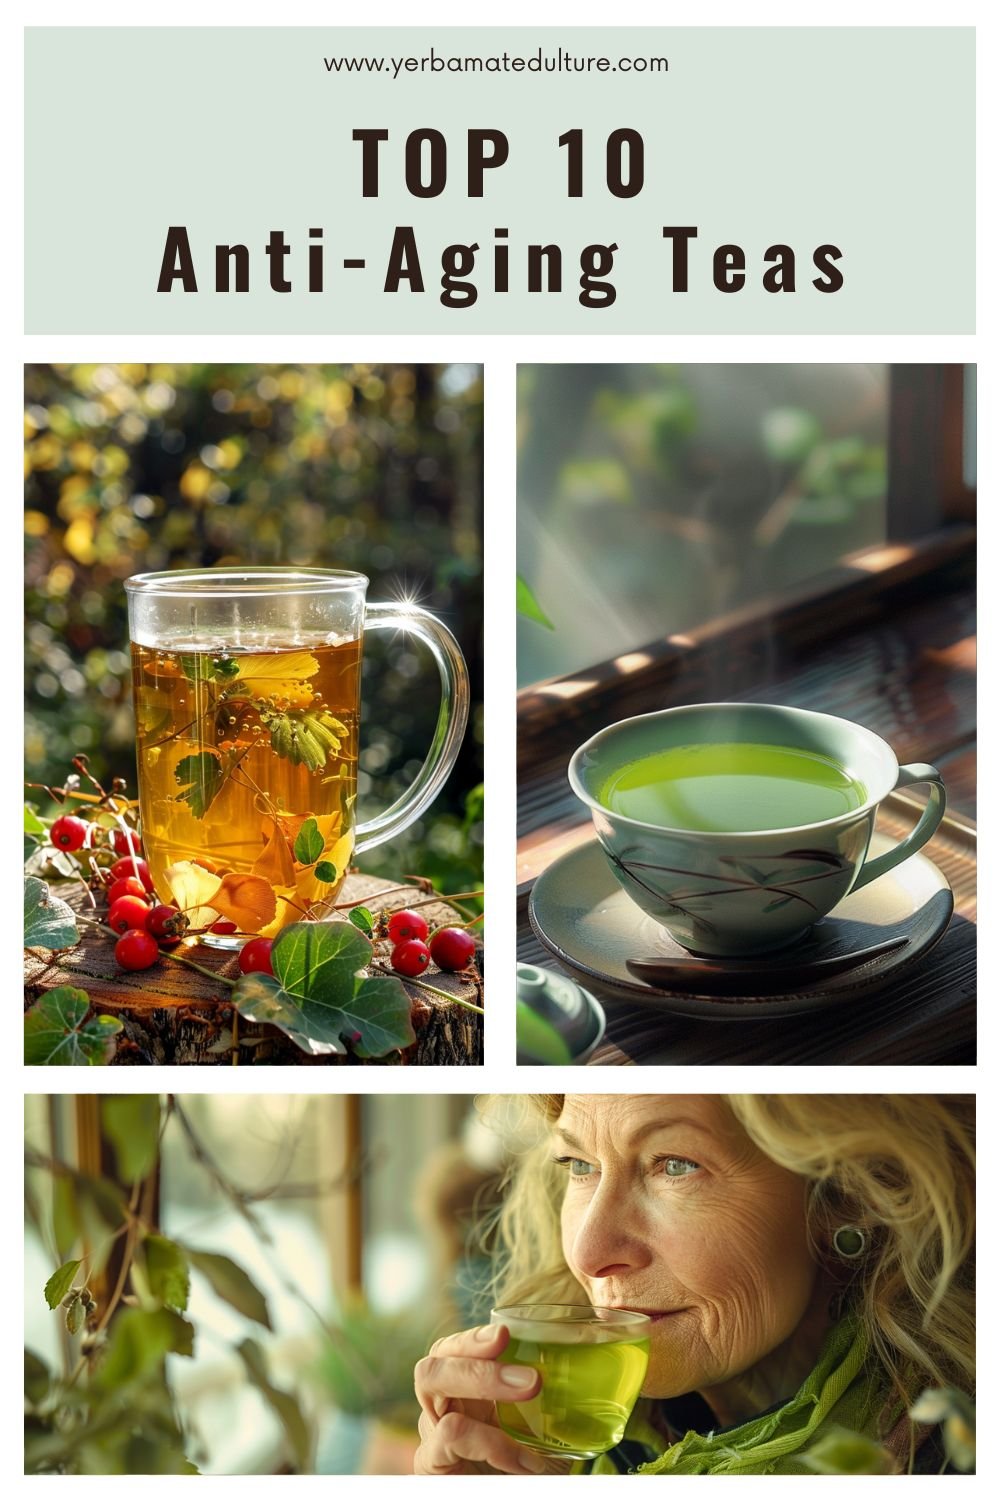 Top 10 Anti-Aging teas